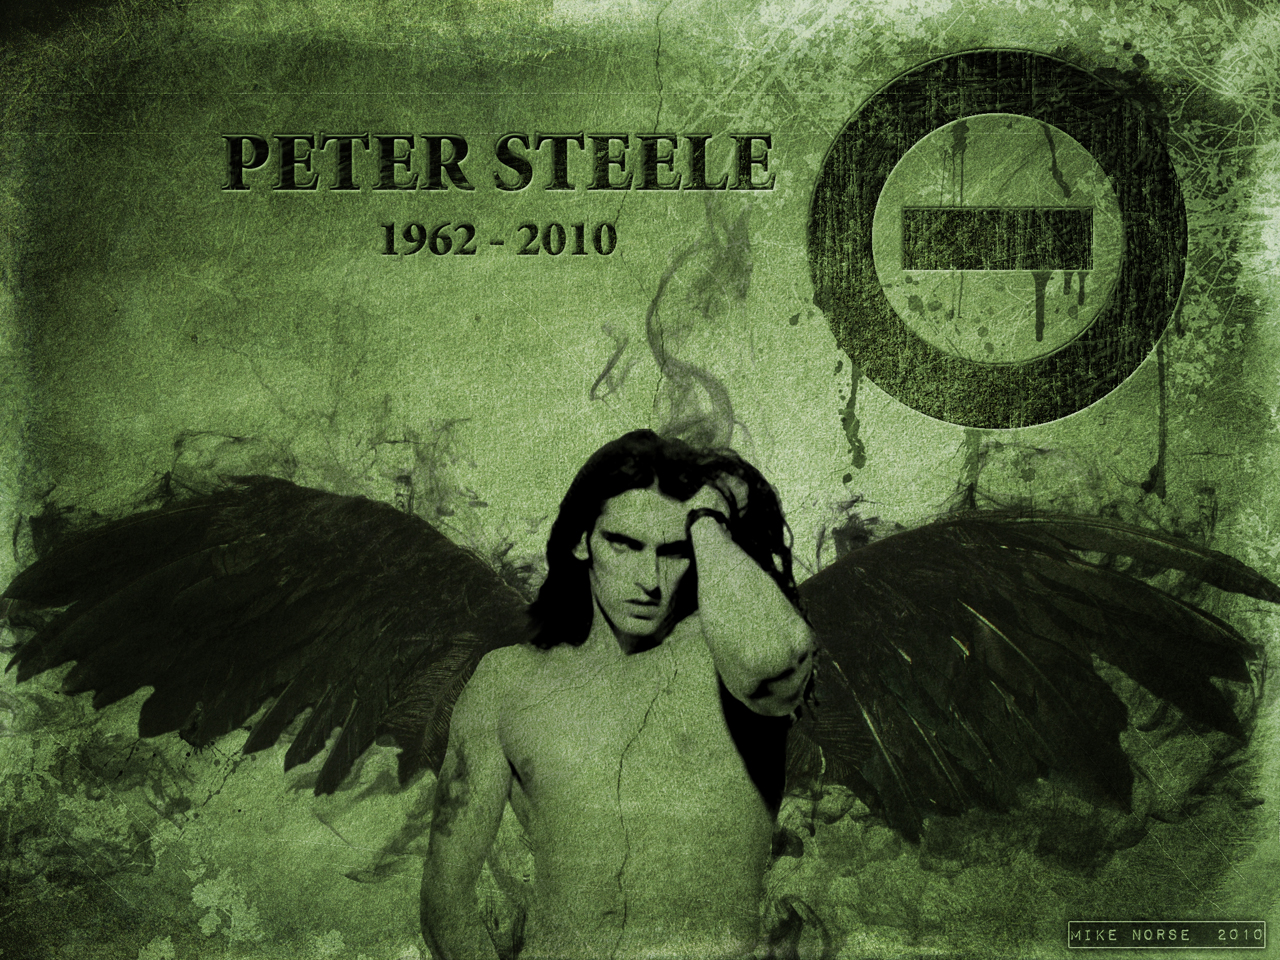 Peter Steele Tribute by VoodooHammer on